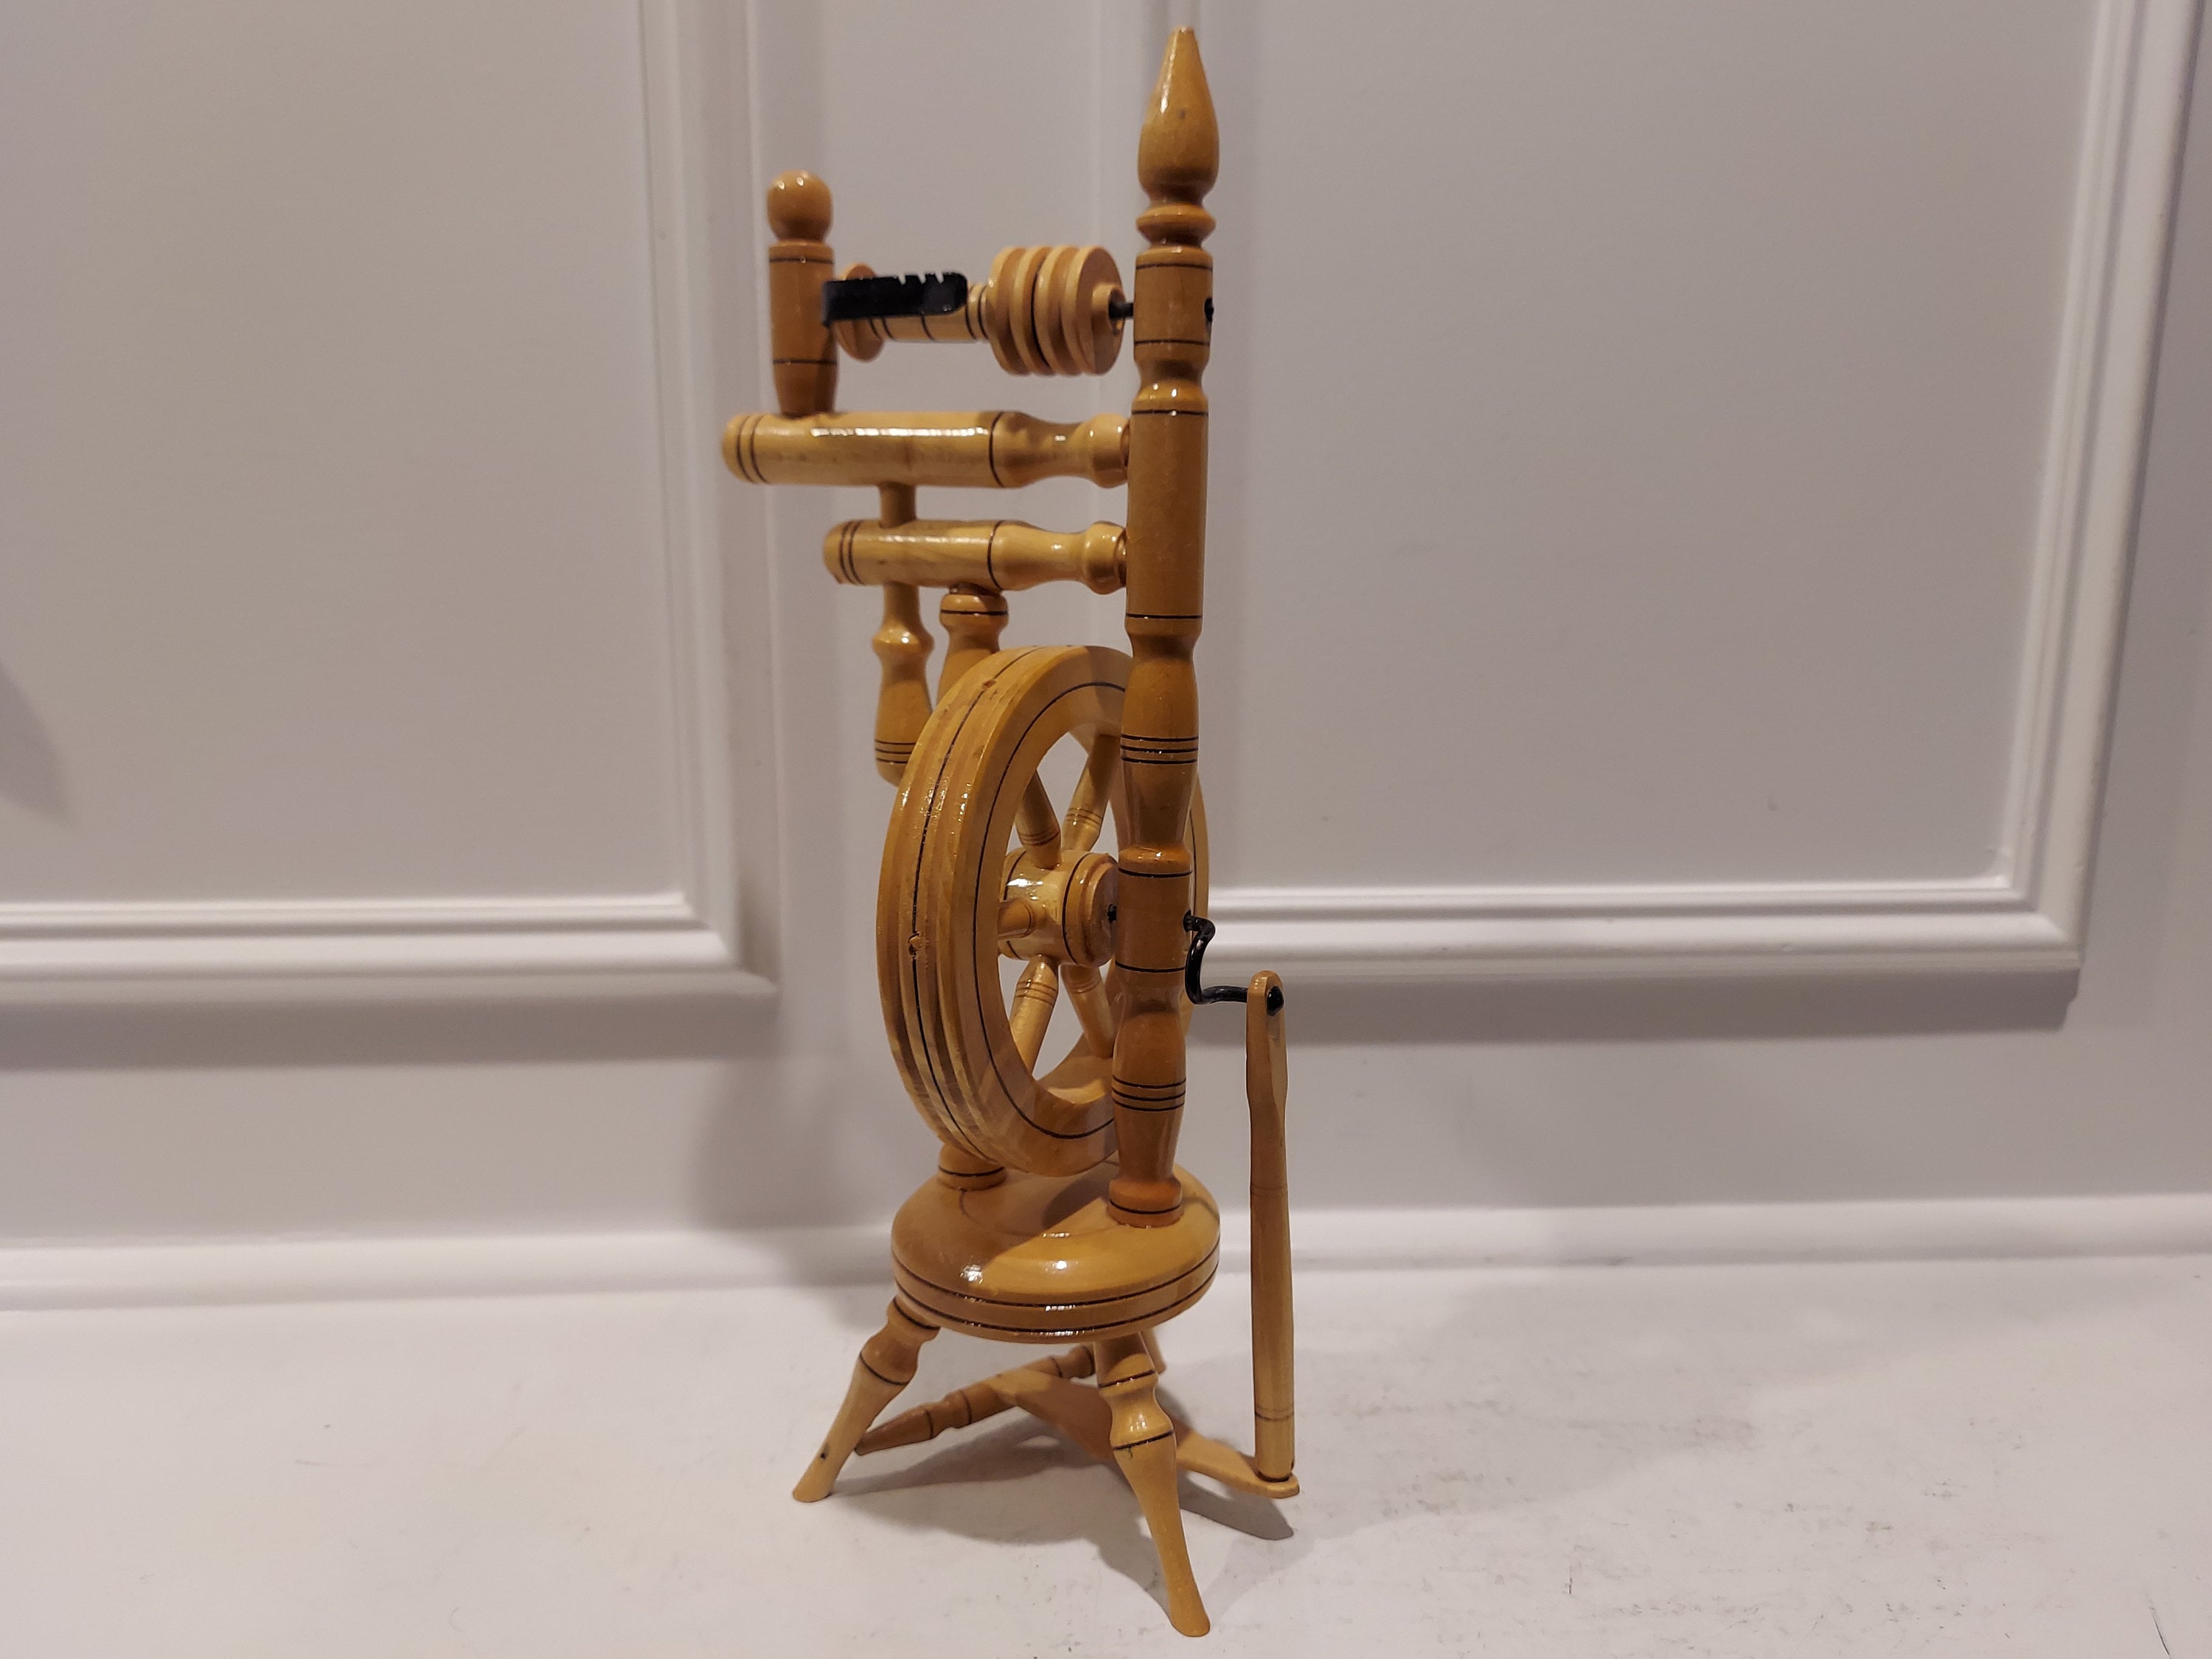 Vintage Spinning Wheel, Wooden Spinning Wheel, Handmade Spinning